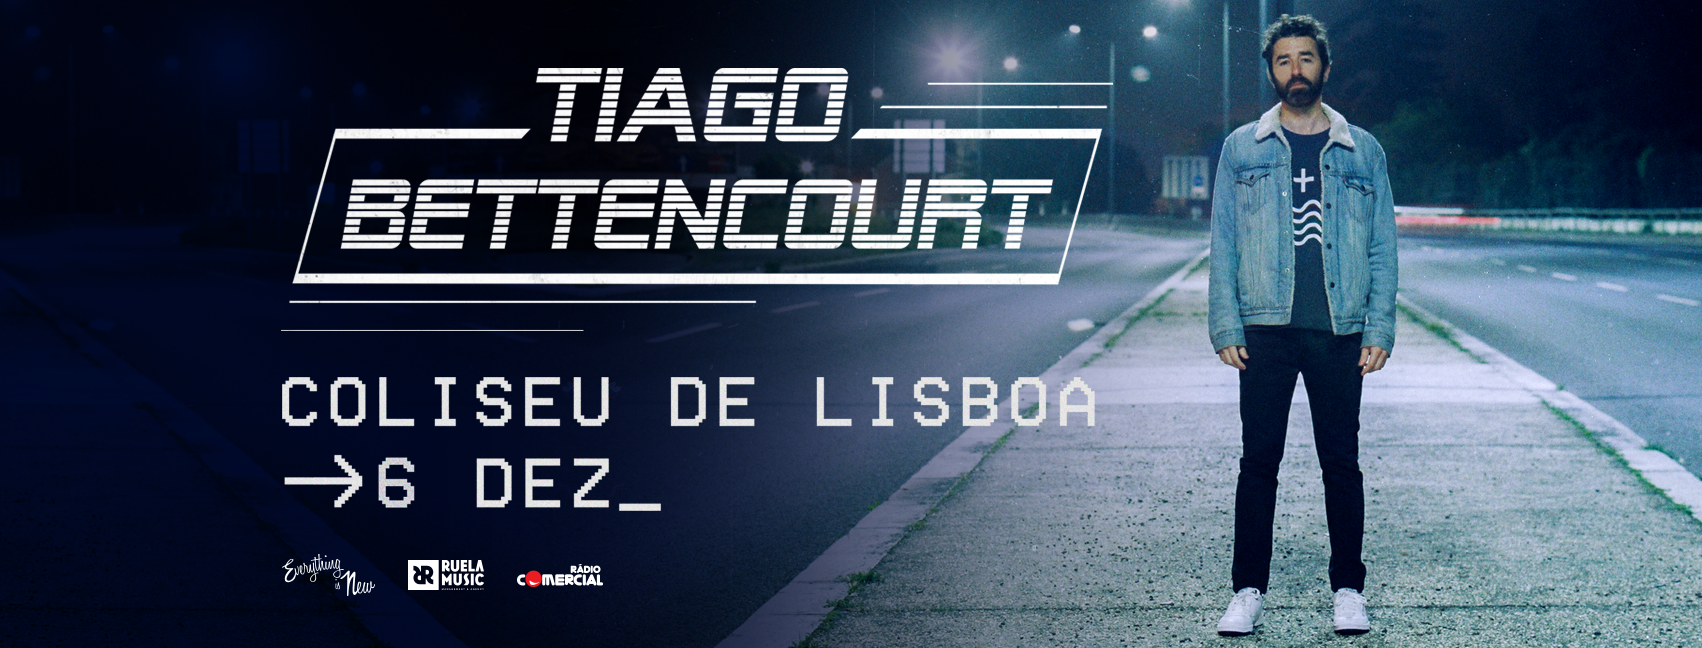 Tiago Bettencourt - concerto 360º - Coliseu de Lisboa